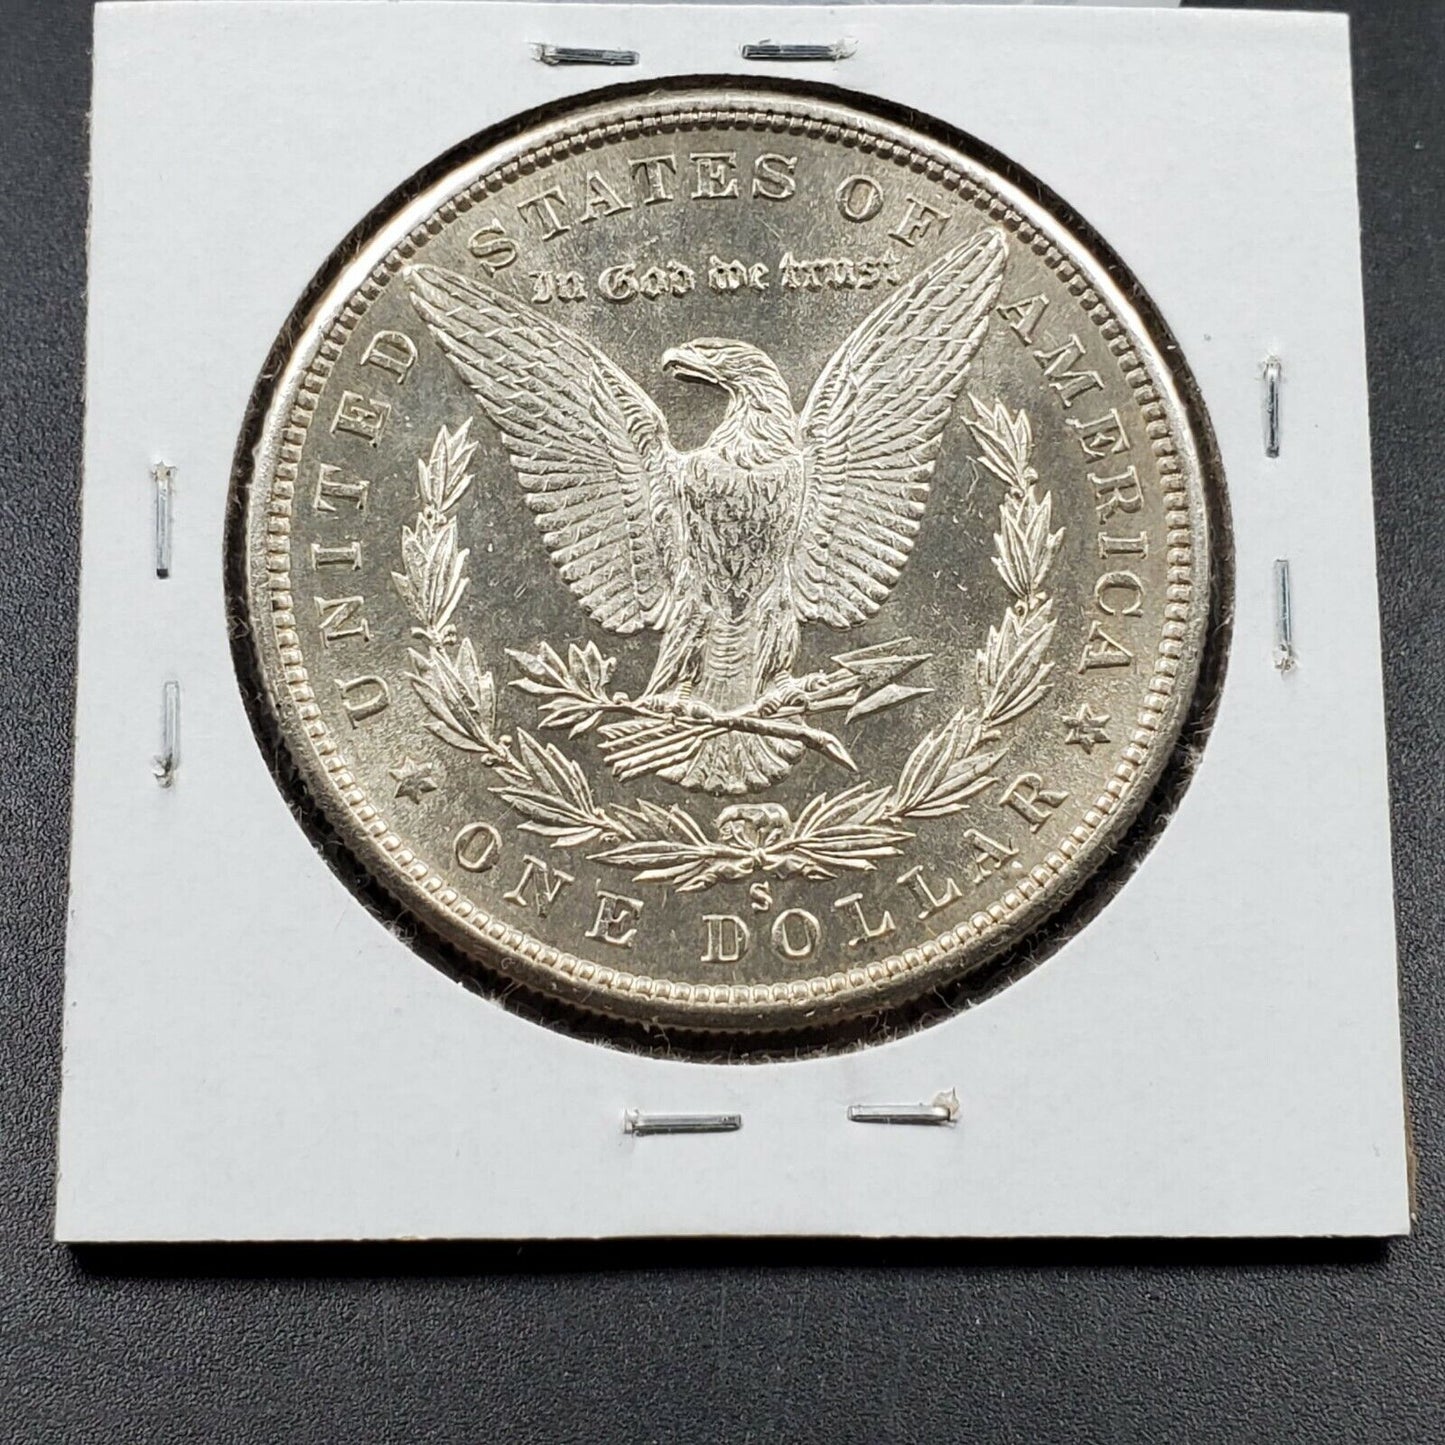 1880 S Morgan Silver Eagle Dollar Coin Nice Average Uncirculated San Francisco